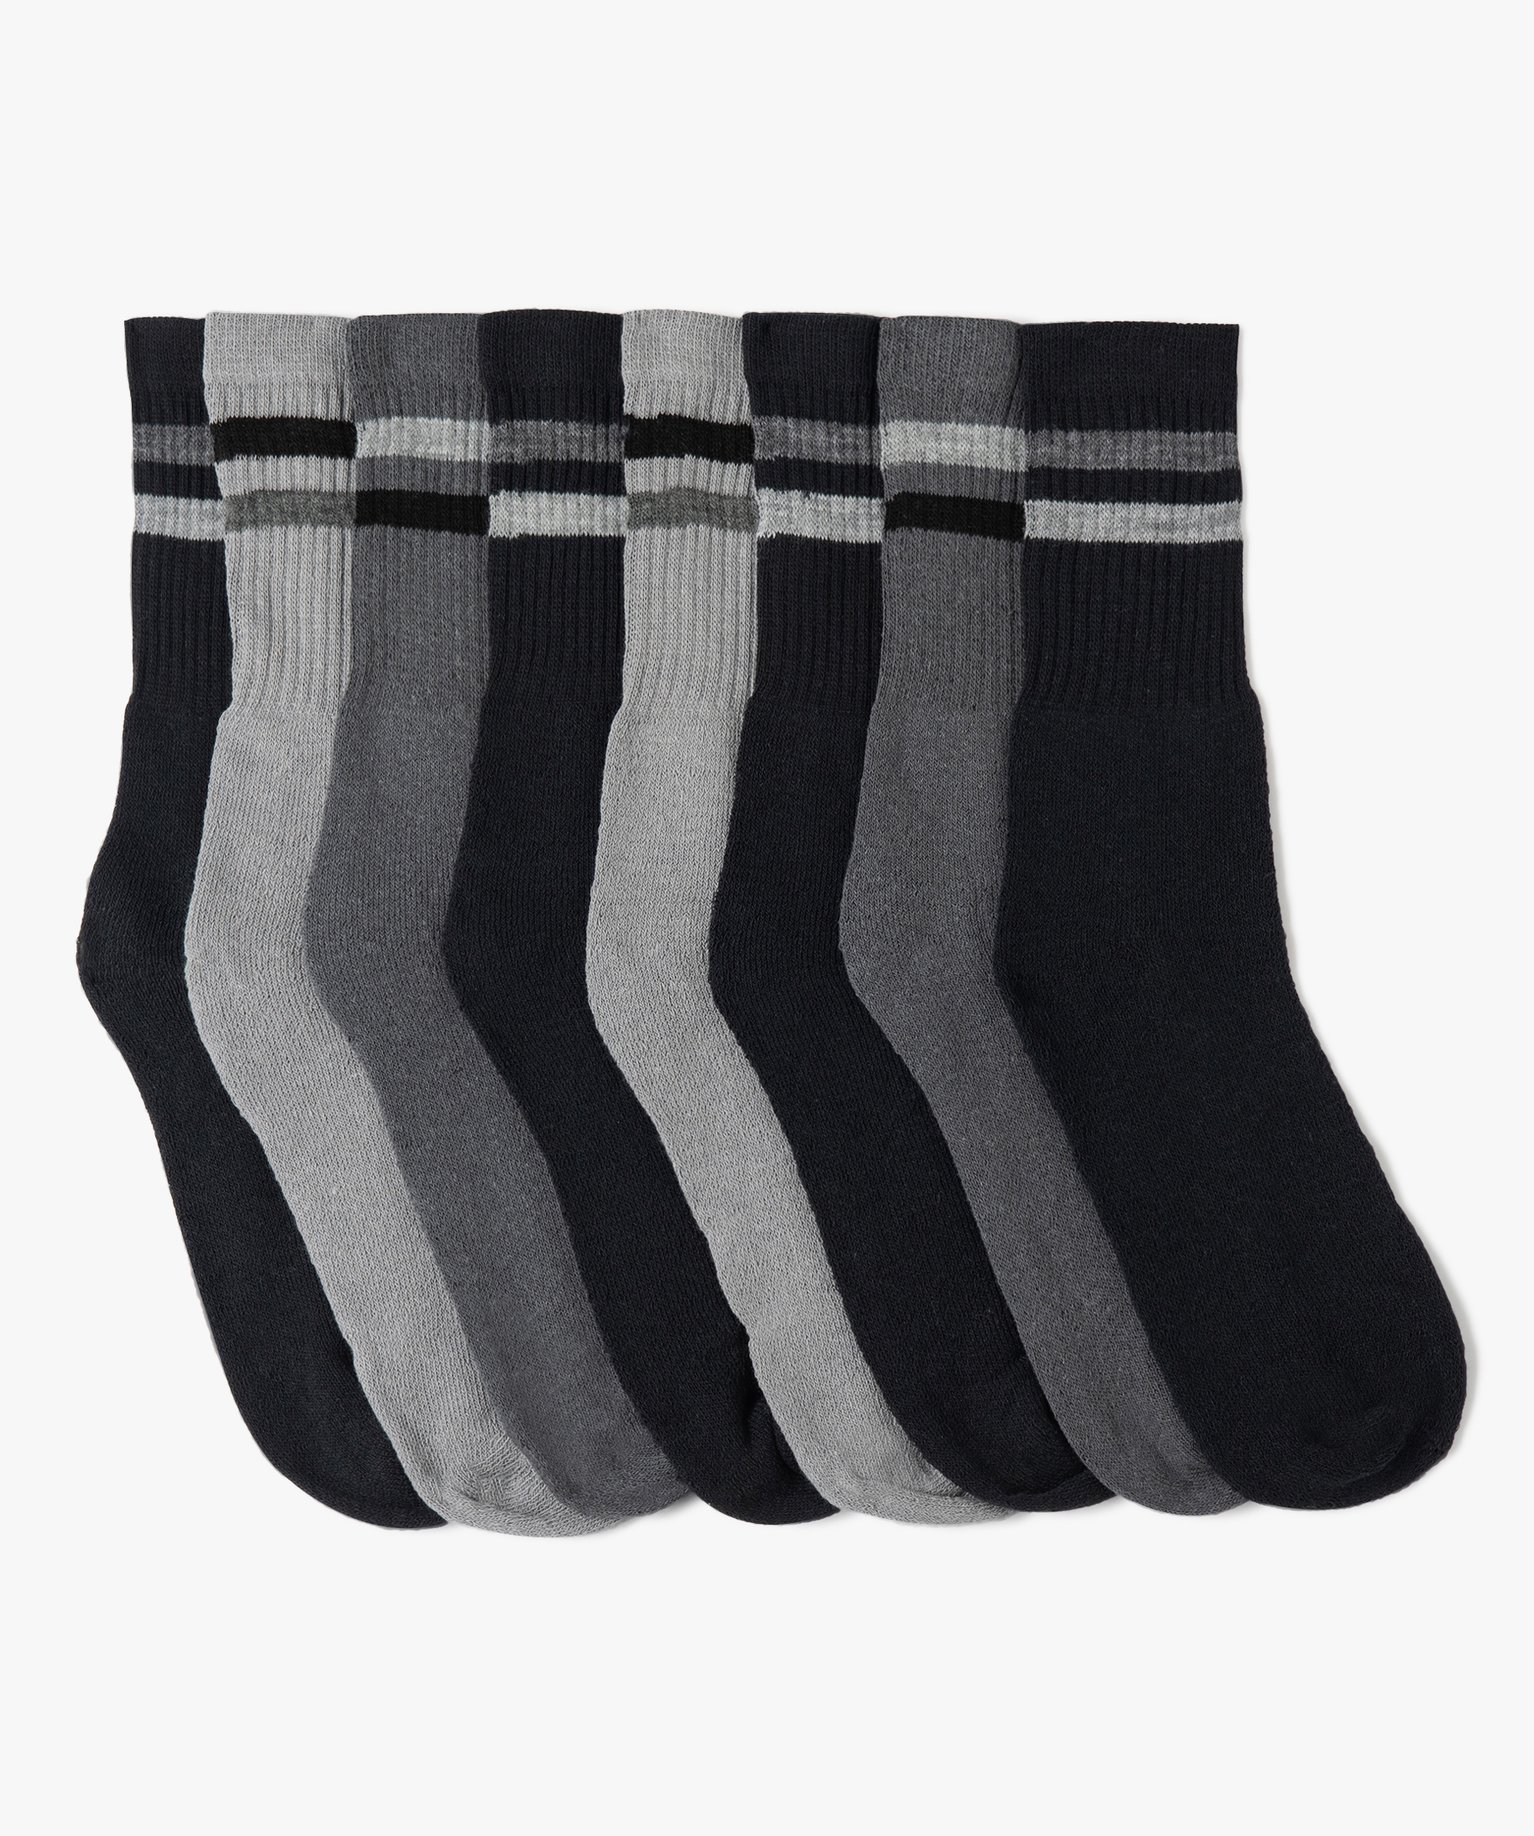 chaussettes de sport homme (lot de 8) gris